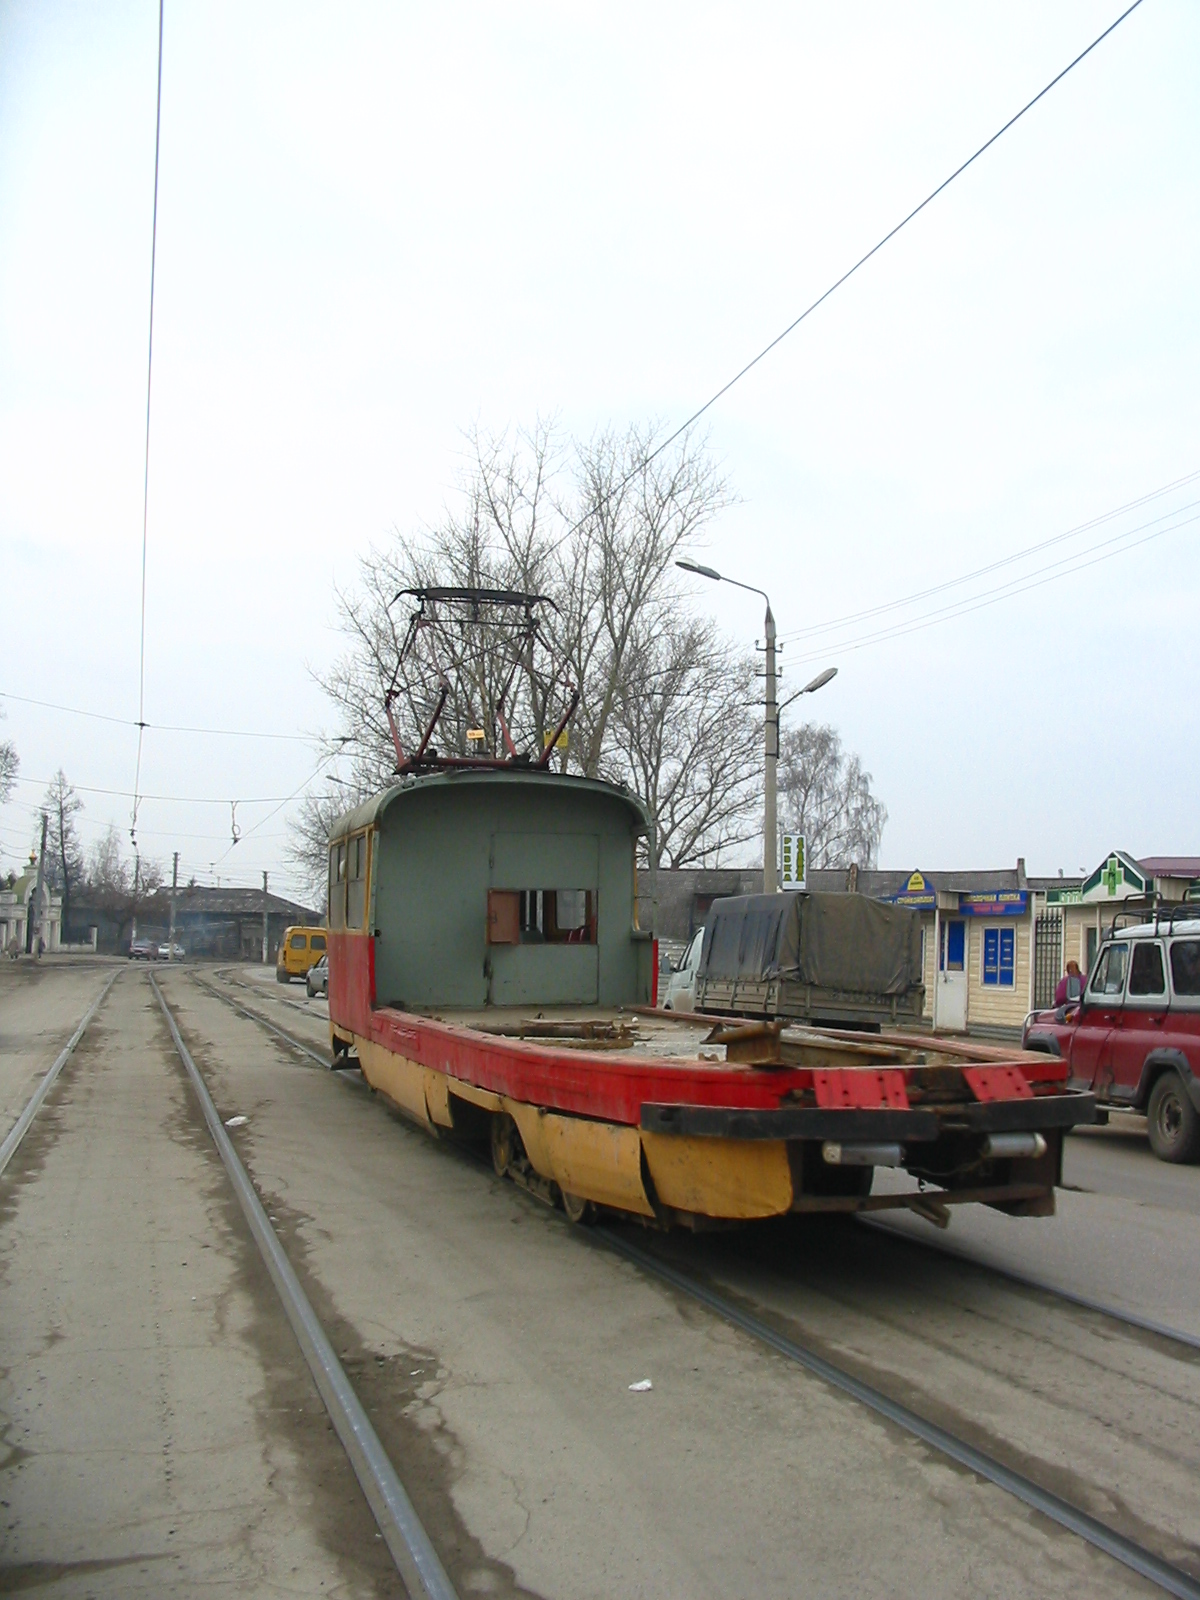 Служебный трамвай Tatra T3 СП-3